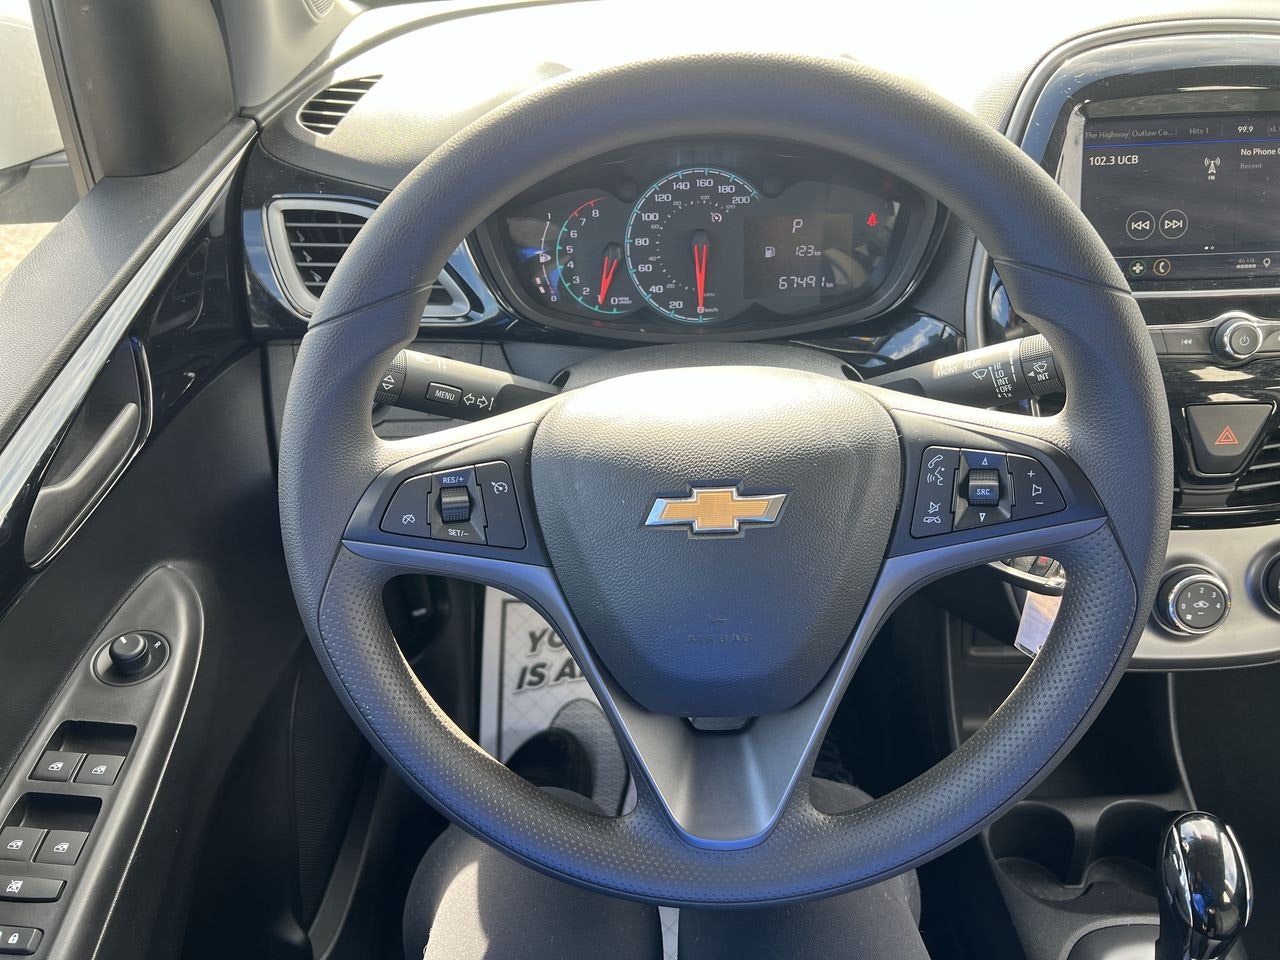 2019 Chevrolet Spark - P20680 Full Image 14